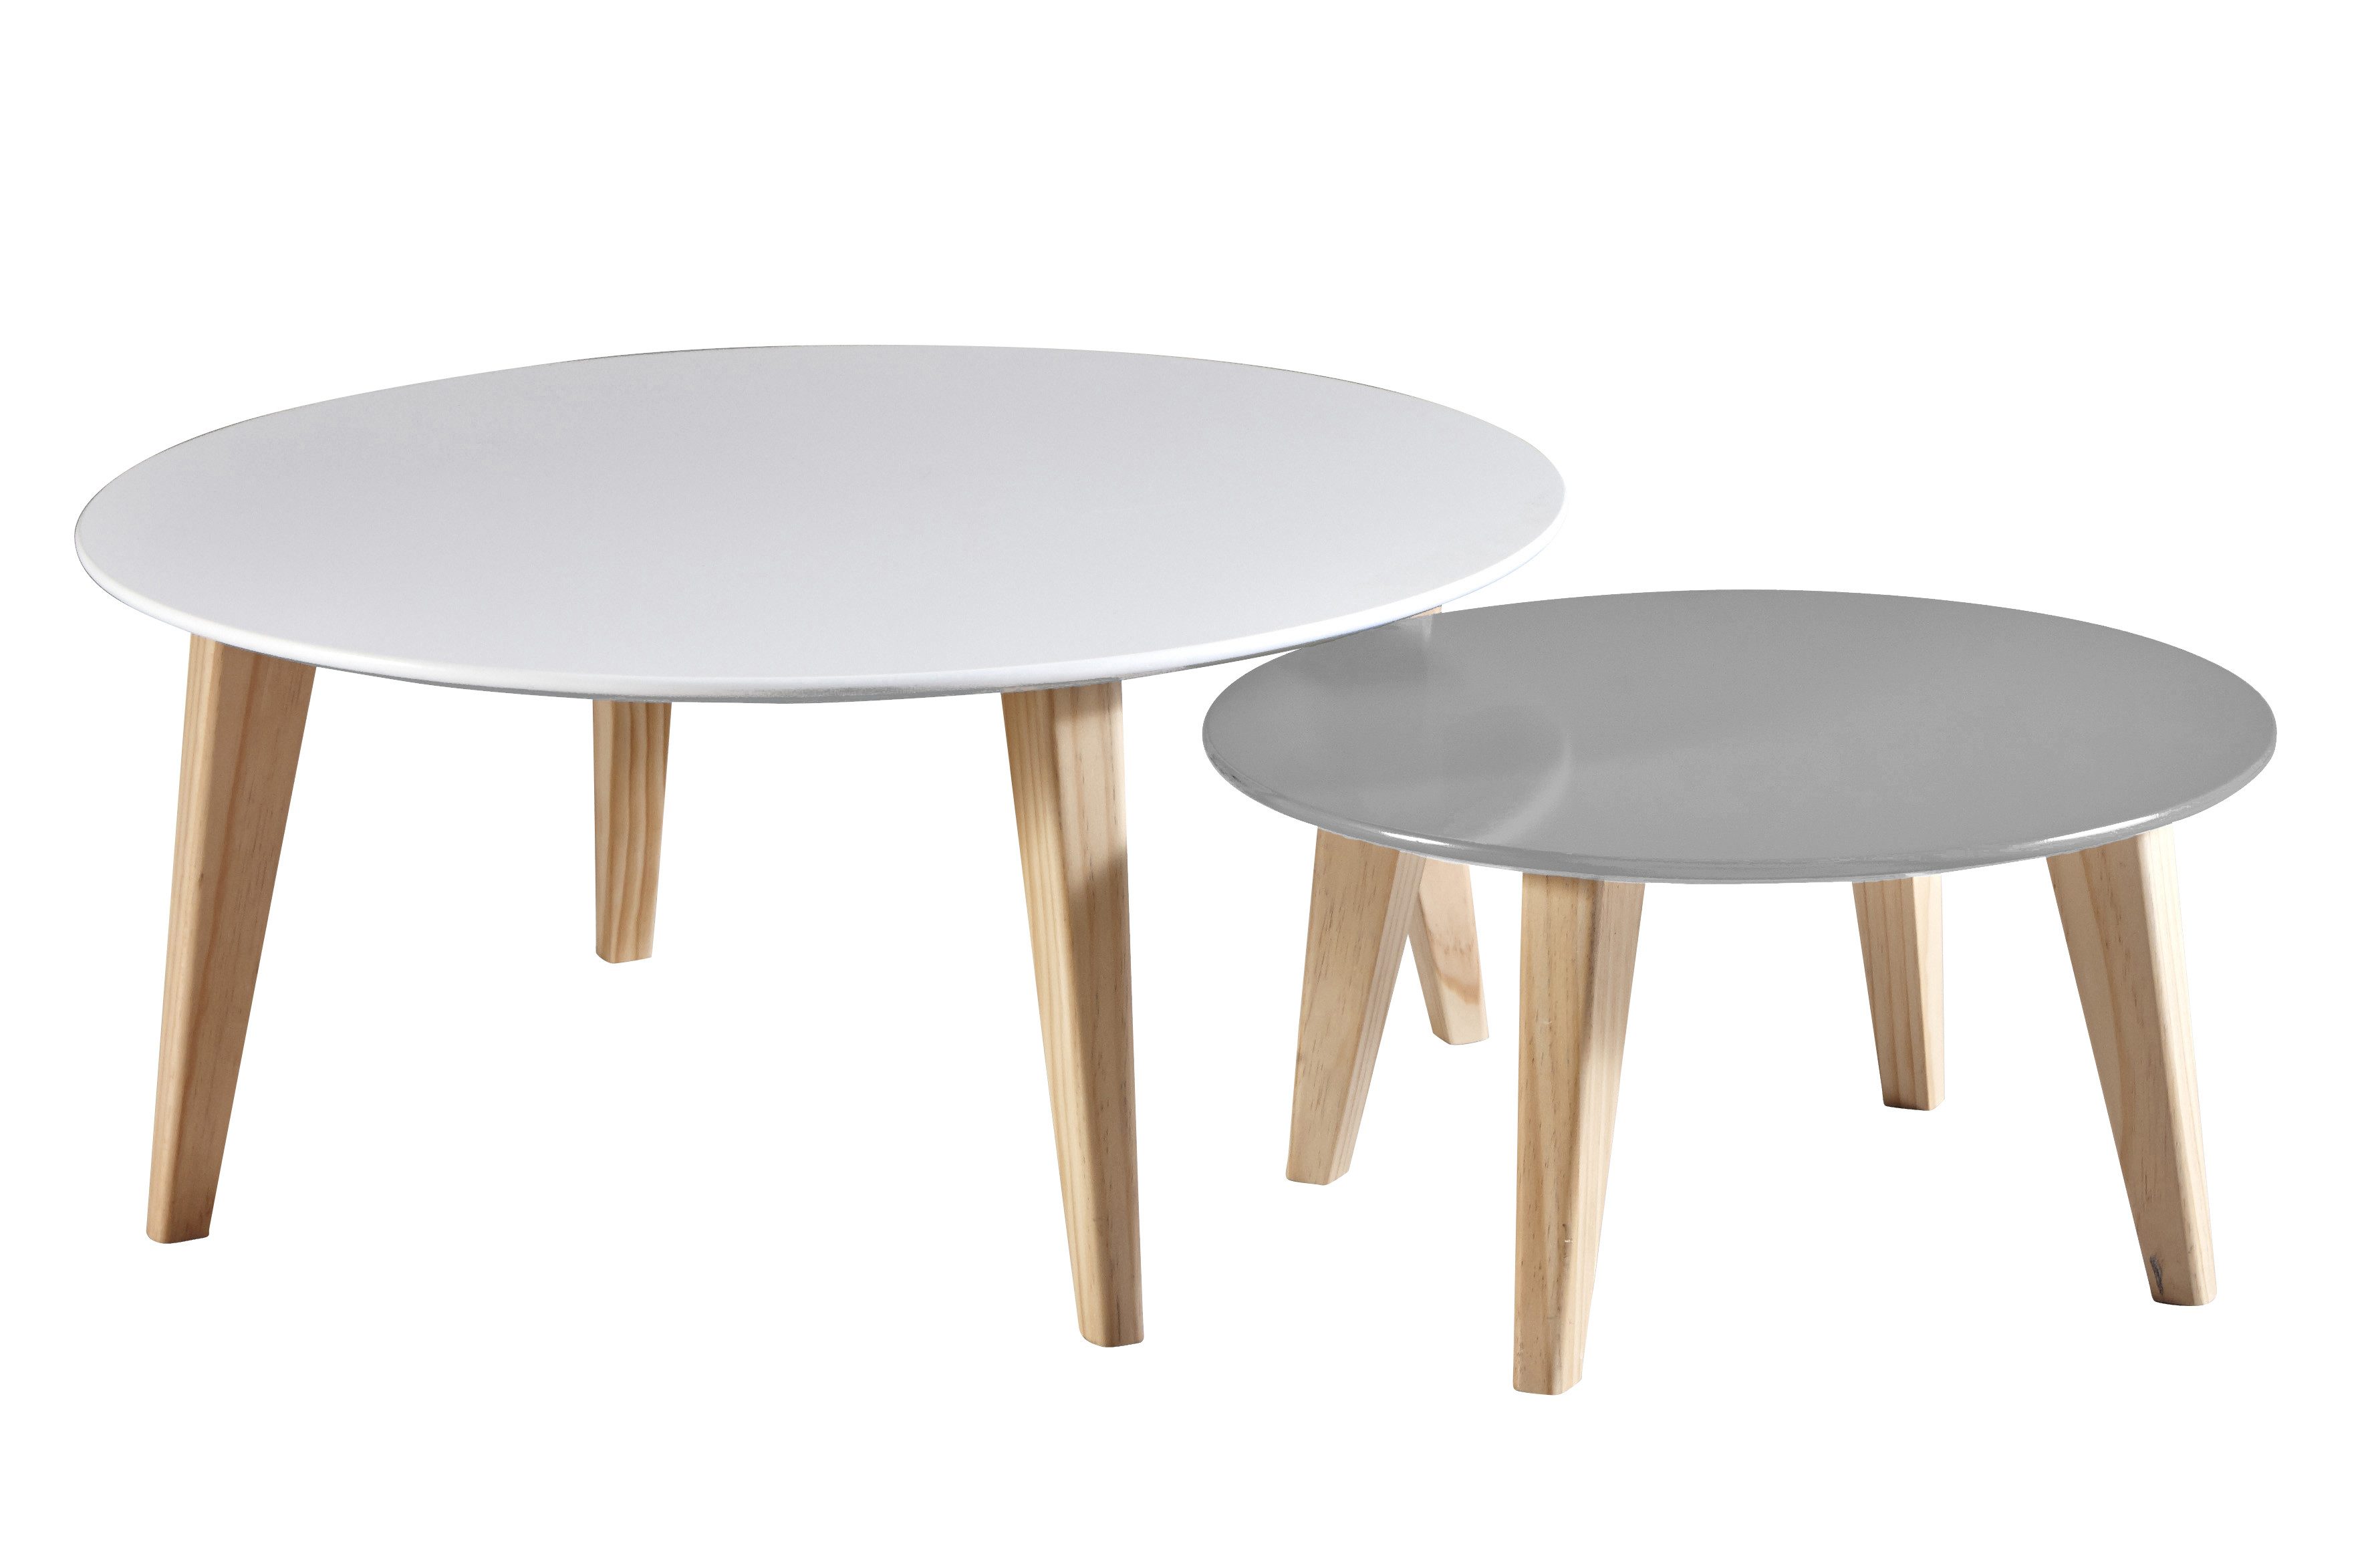 habeig Beistelltisch 2er-Set Tischset Wohnzimmertisch Kaffeetisch Tisch weiß grau, 2er Set bestehend aus einem großen und einem kleinerem Tisch